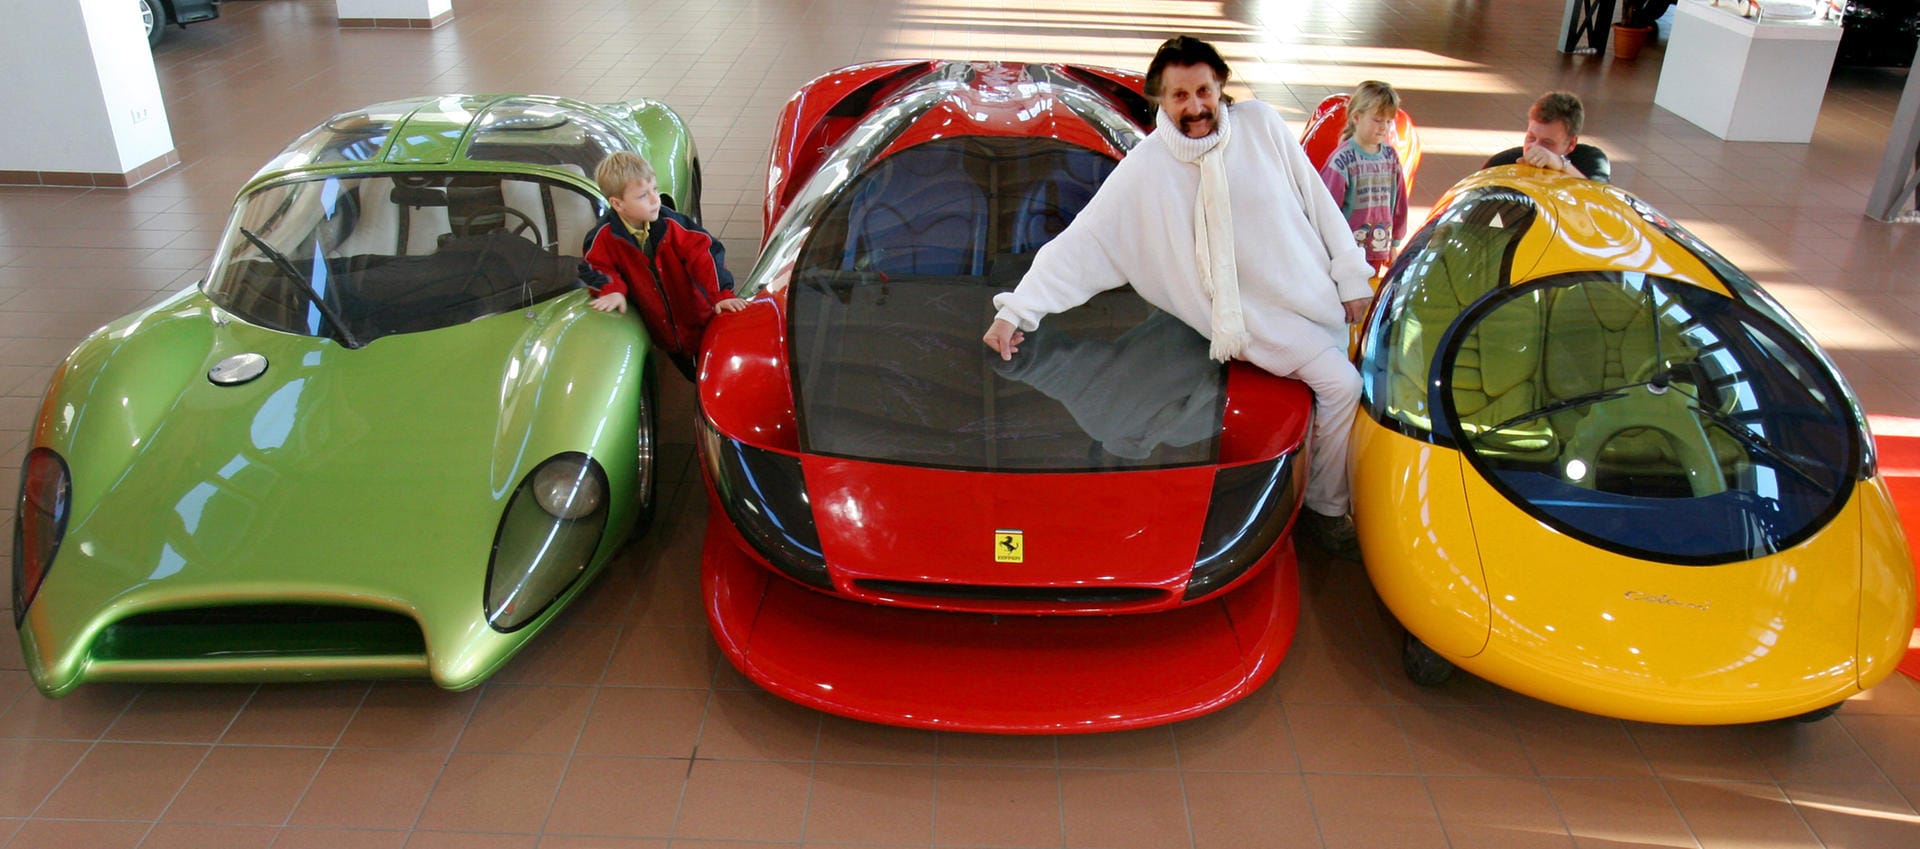 "Das gelbe Ei": Luigi Colani im Jahr 2006 mit seinem neuentwickelten Stadtauto (r.), einem Ferrari Testarossa (M.), mit dem er einen Weltrekord von 387 km/h gefahren hat, und einem Speedster auf Basis eines VW-Käfers von 1968/69 (l.) in einem Autohaus.